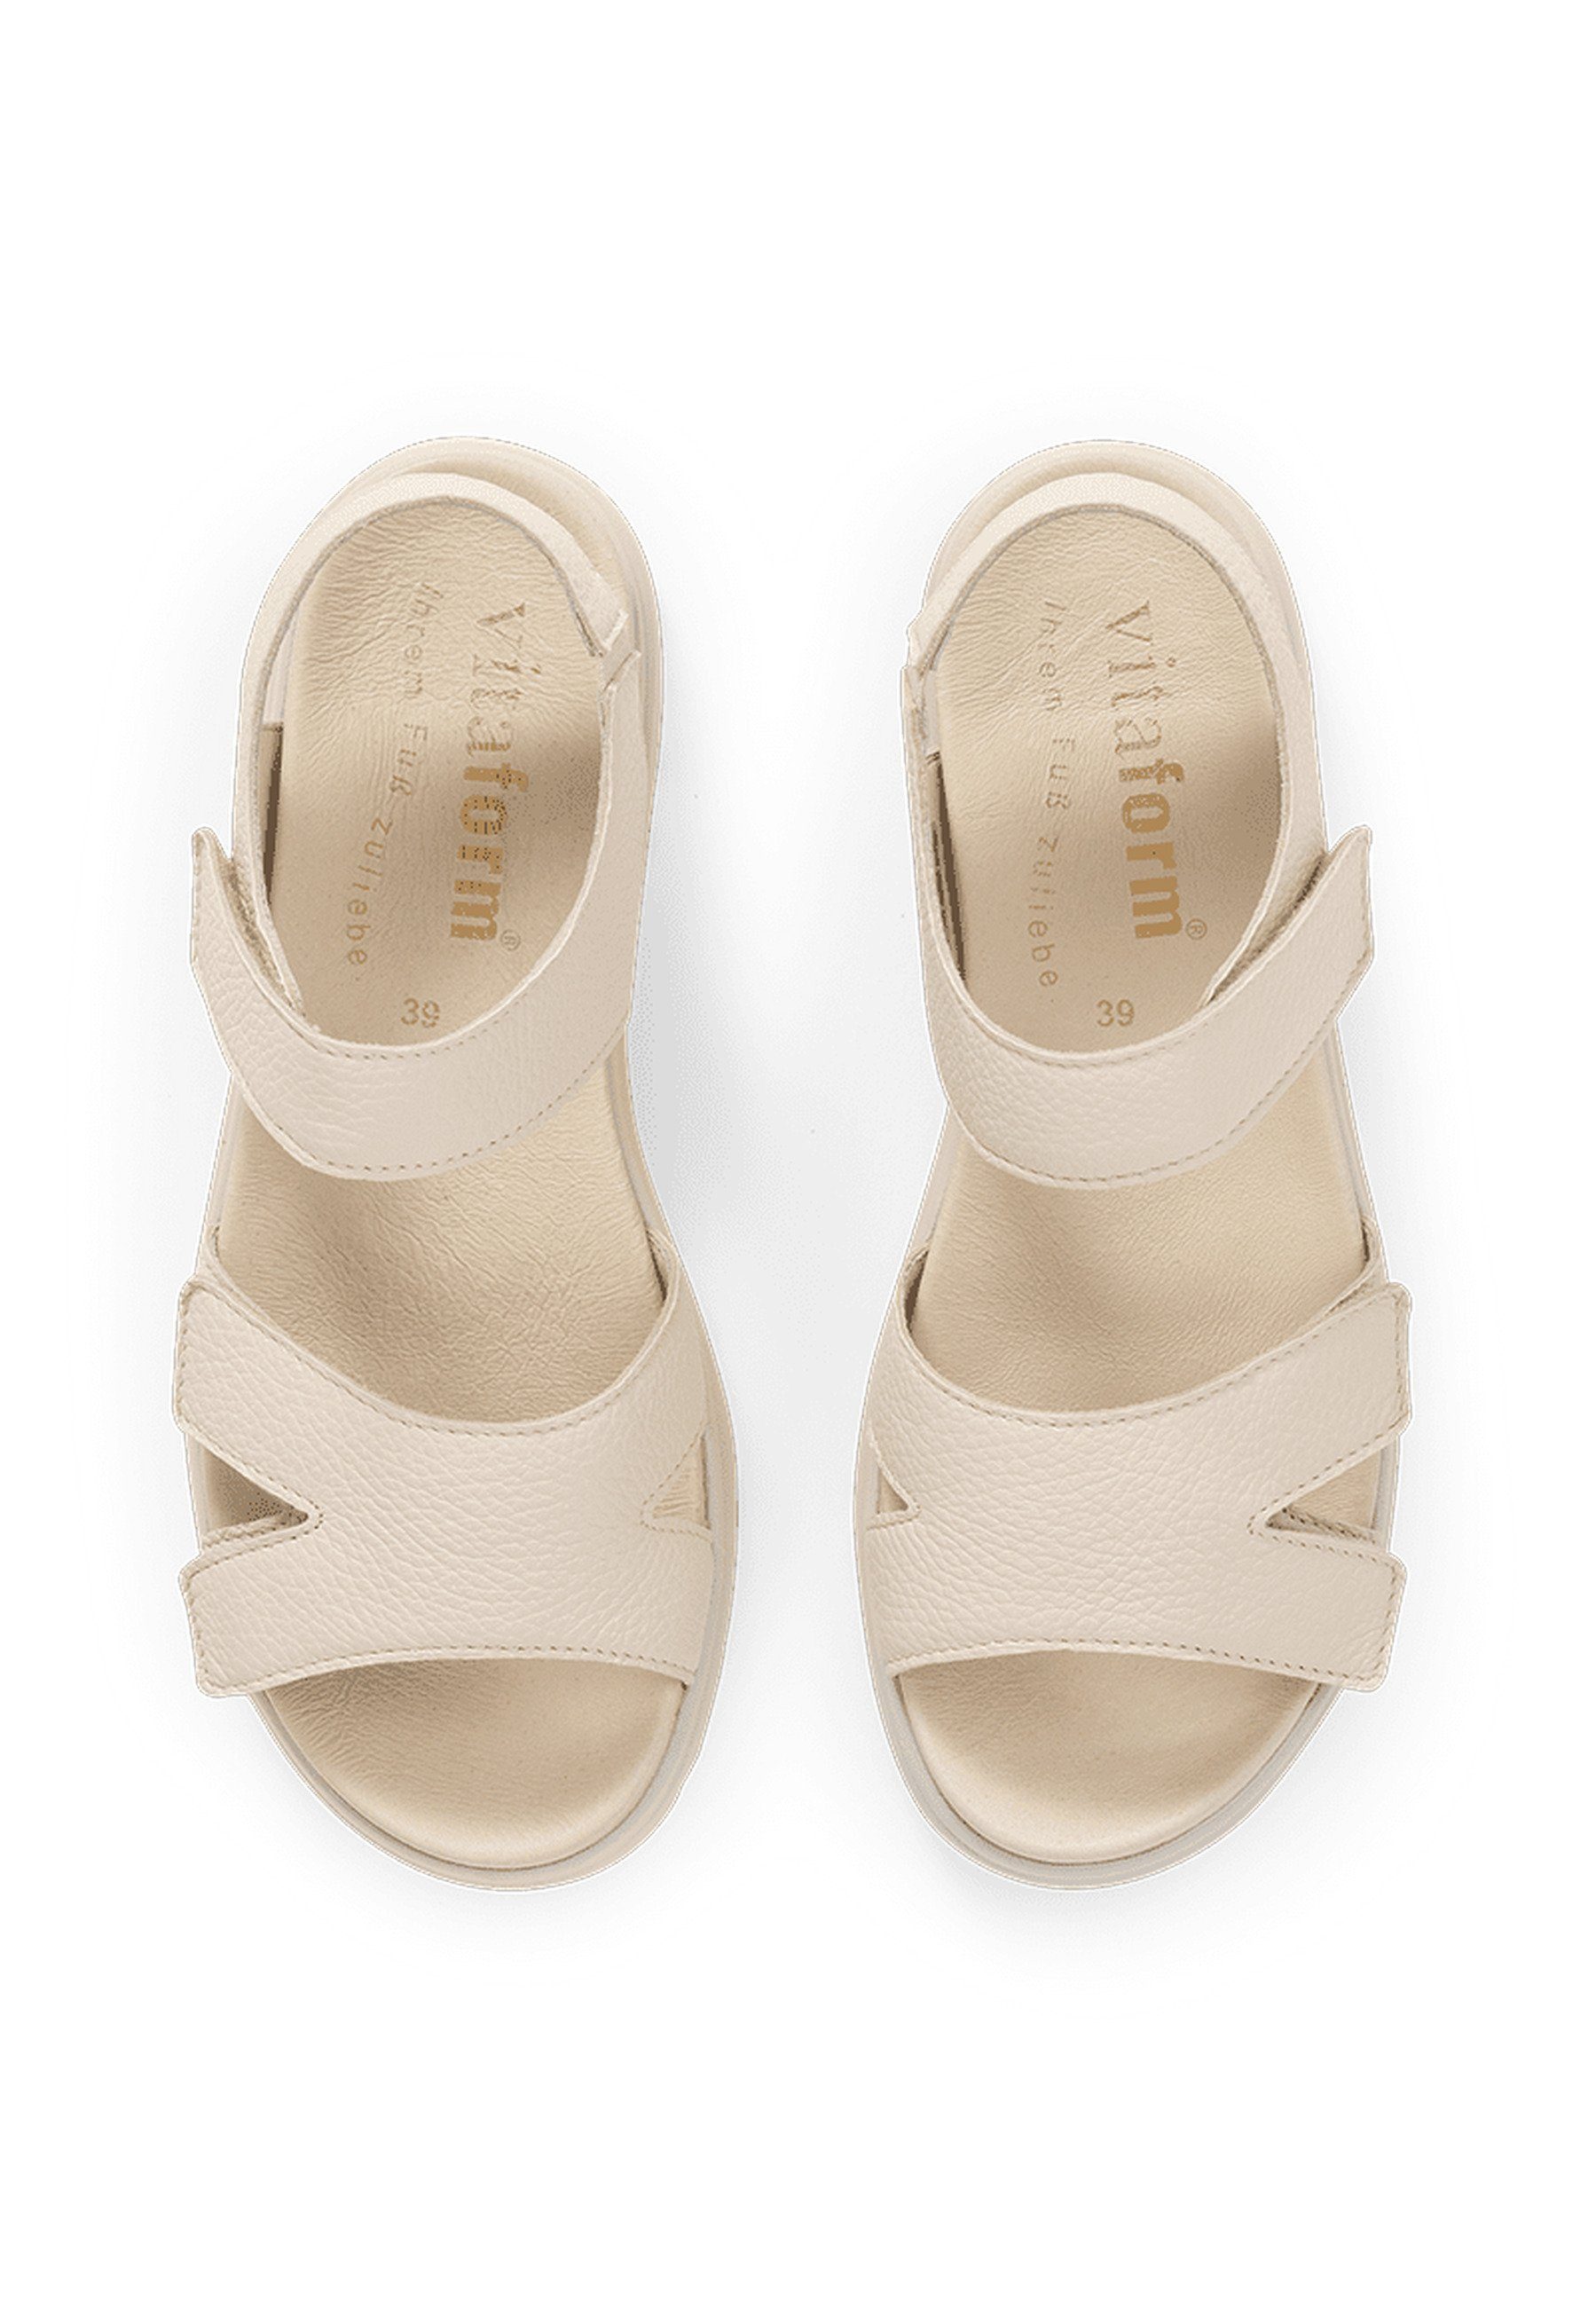 Damenschuhe Hirschleder Sandale Sandale beige vitaform